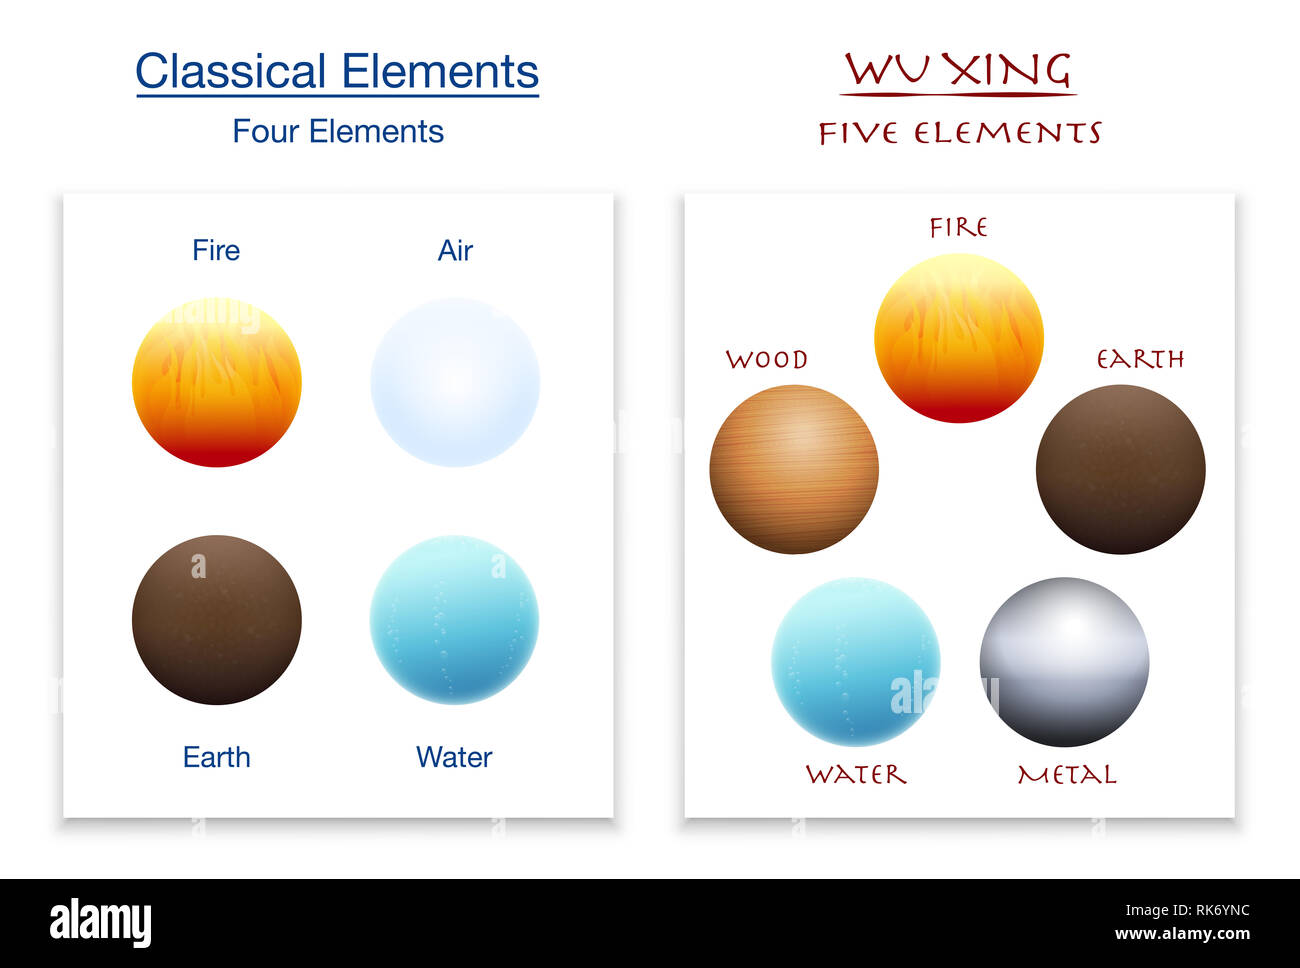 Klassischen vier Elemente und die fünf Elemente der Wu Xing im Vergleich - Abbildung auf weißem Hintergrund. Stockfoto